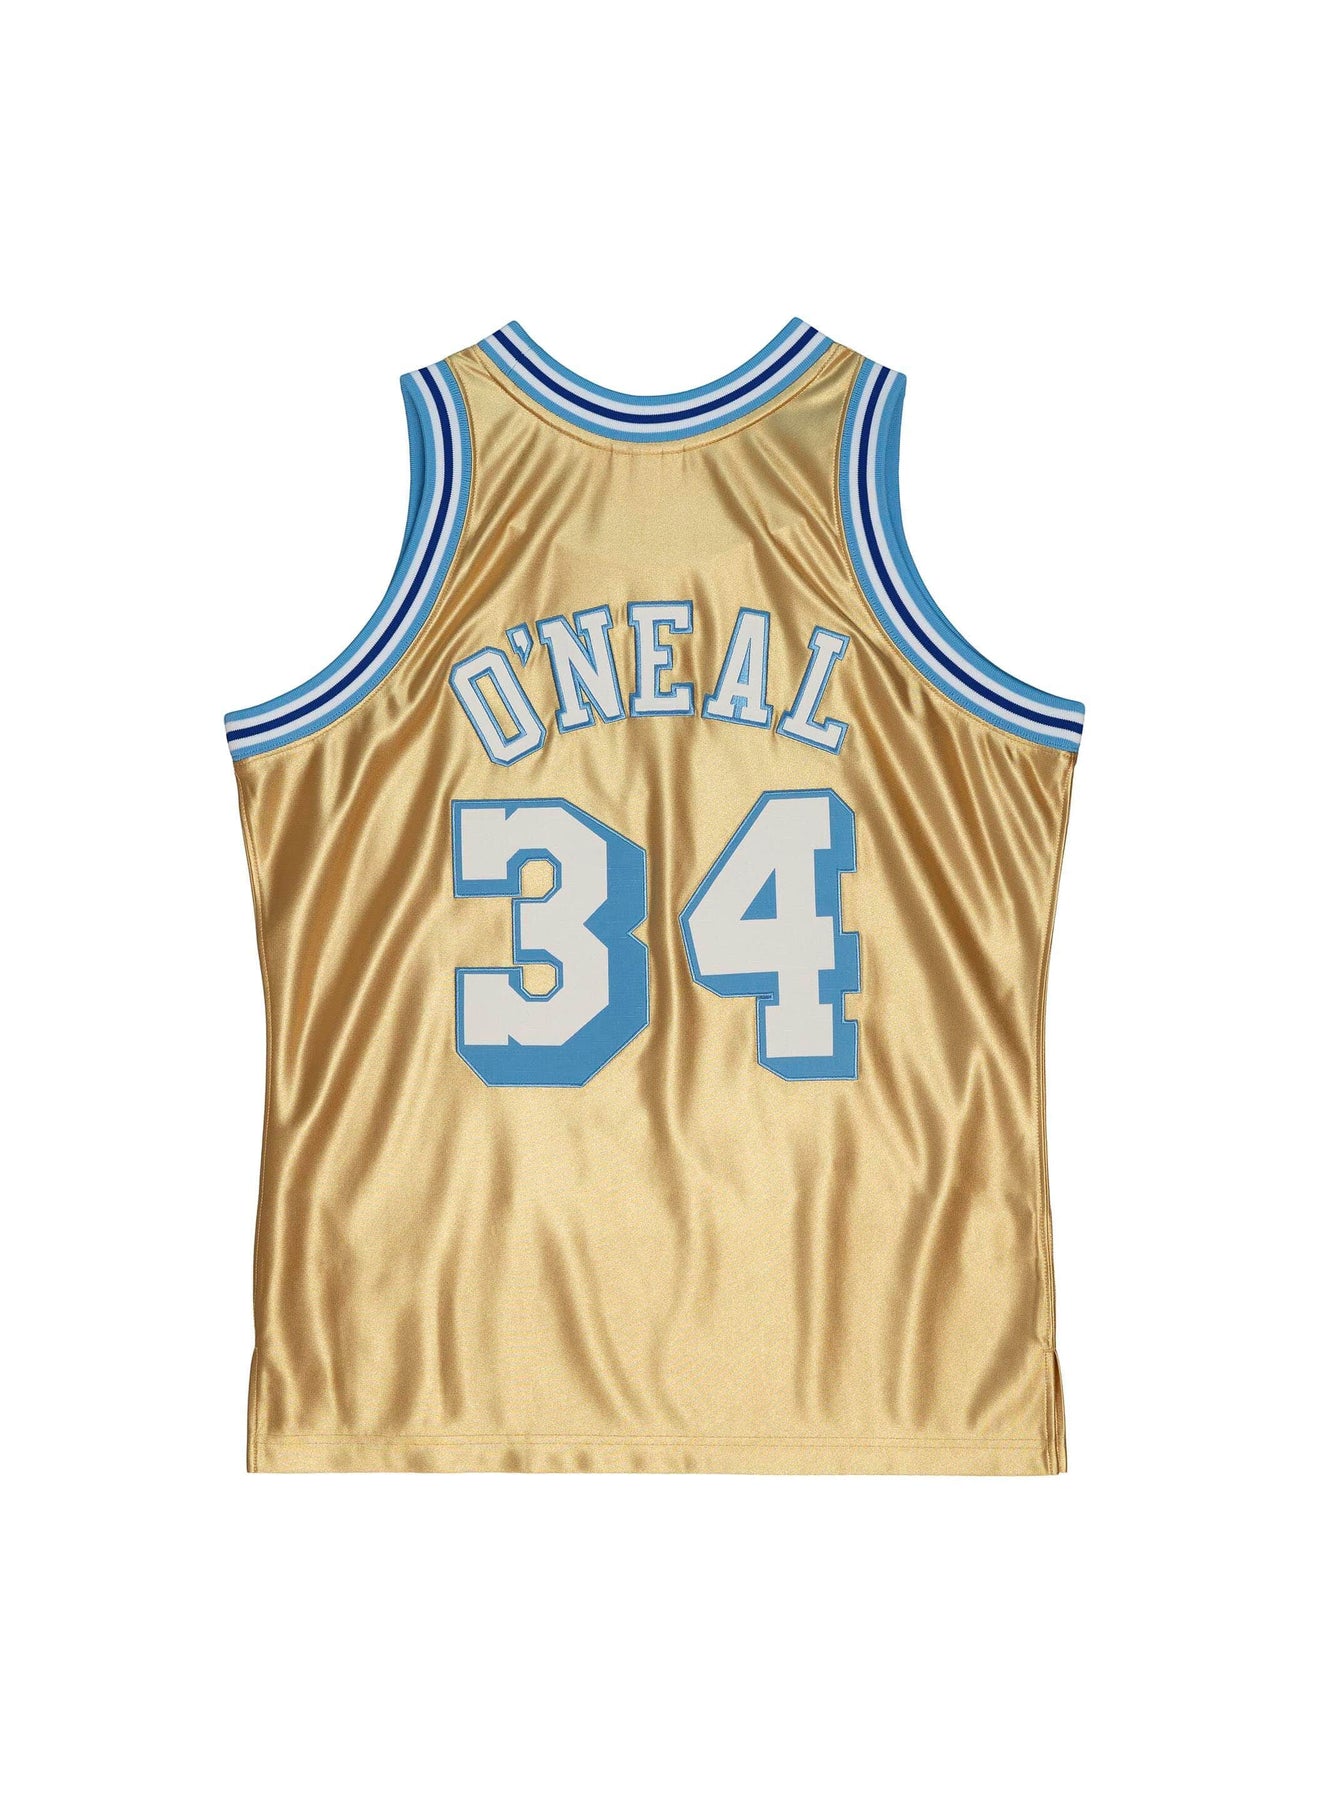 Buy NBA SWINGMAN JERSEY BALL LA LAKERS ASSOCIATION for N/A 0.0 on !